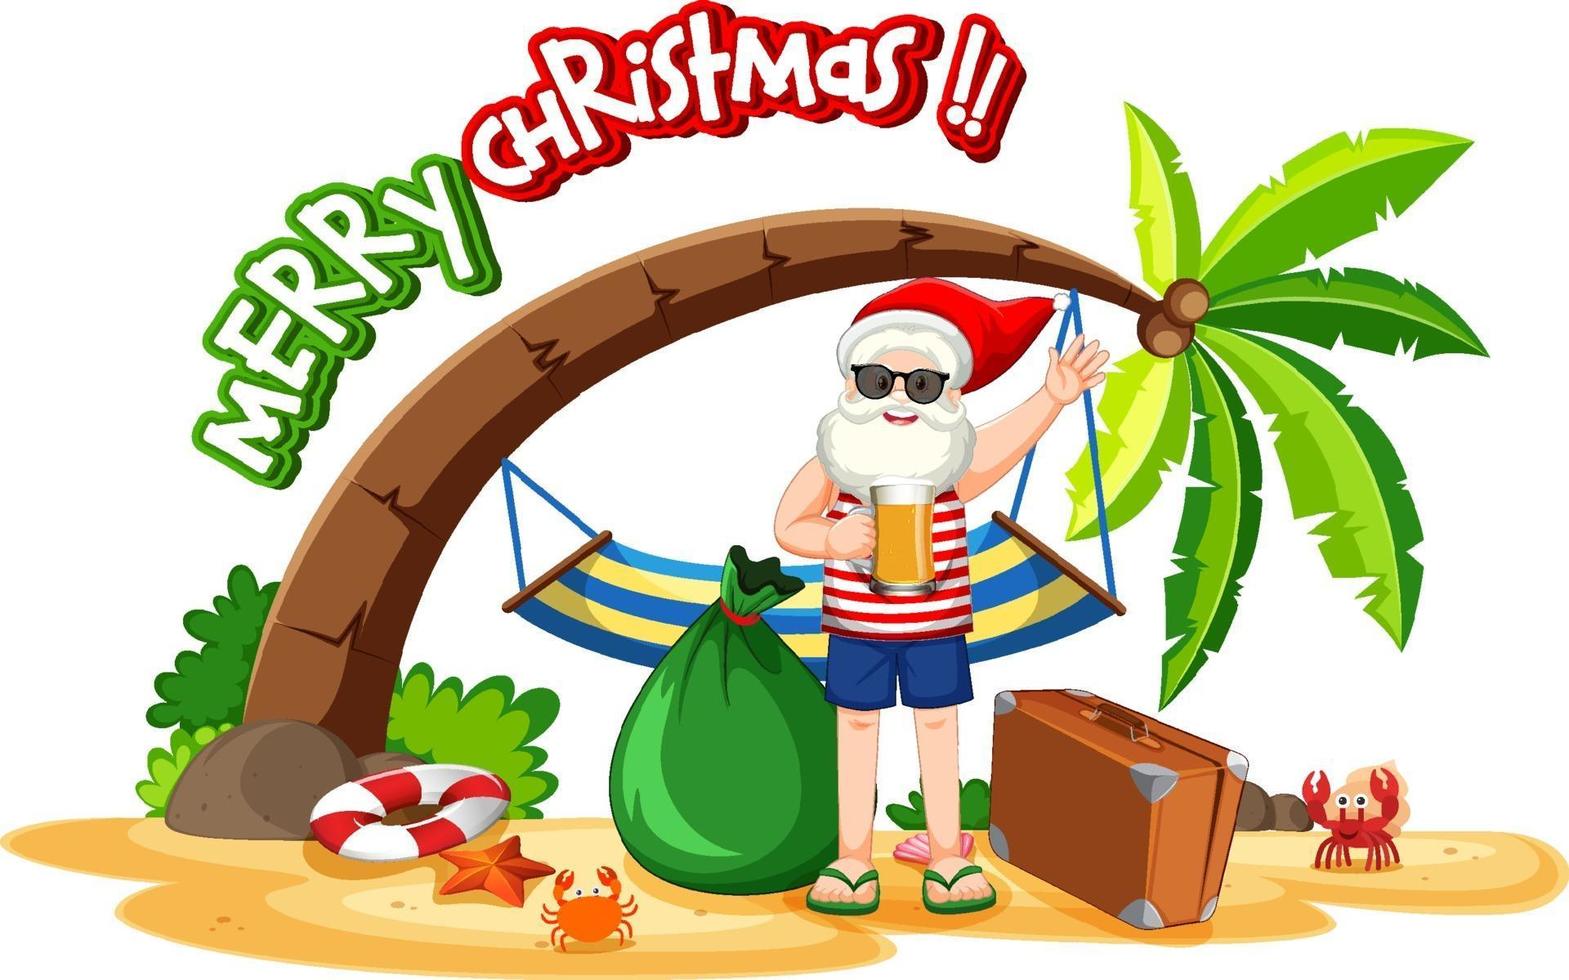 Santa Claus on the beach island for Summer Christmas vector